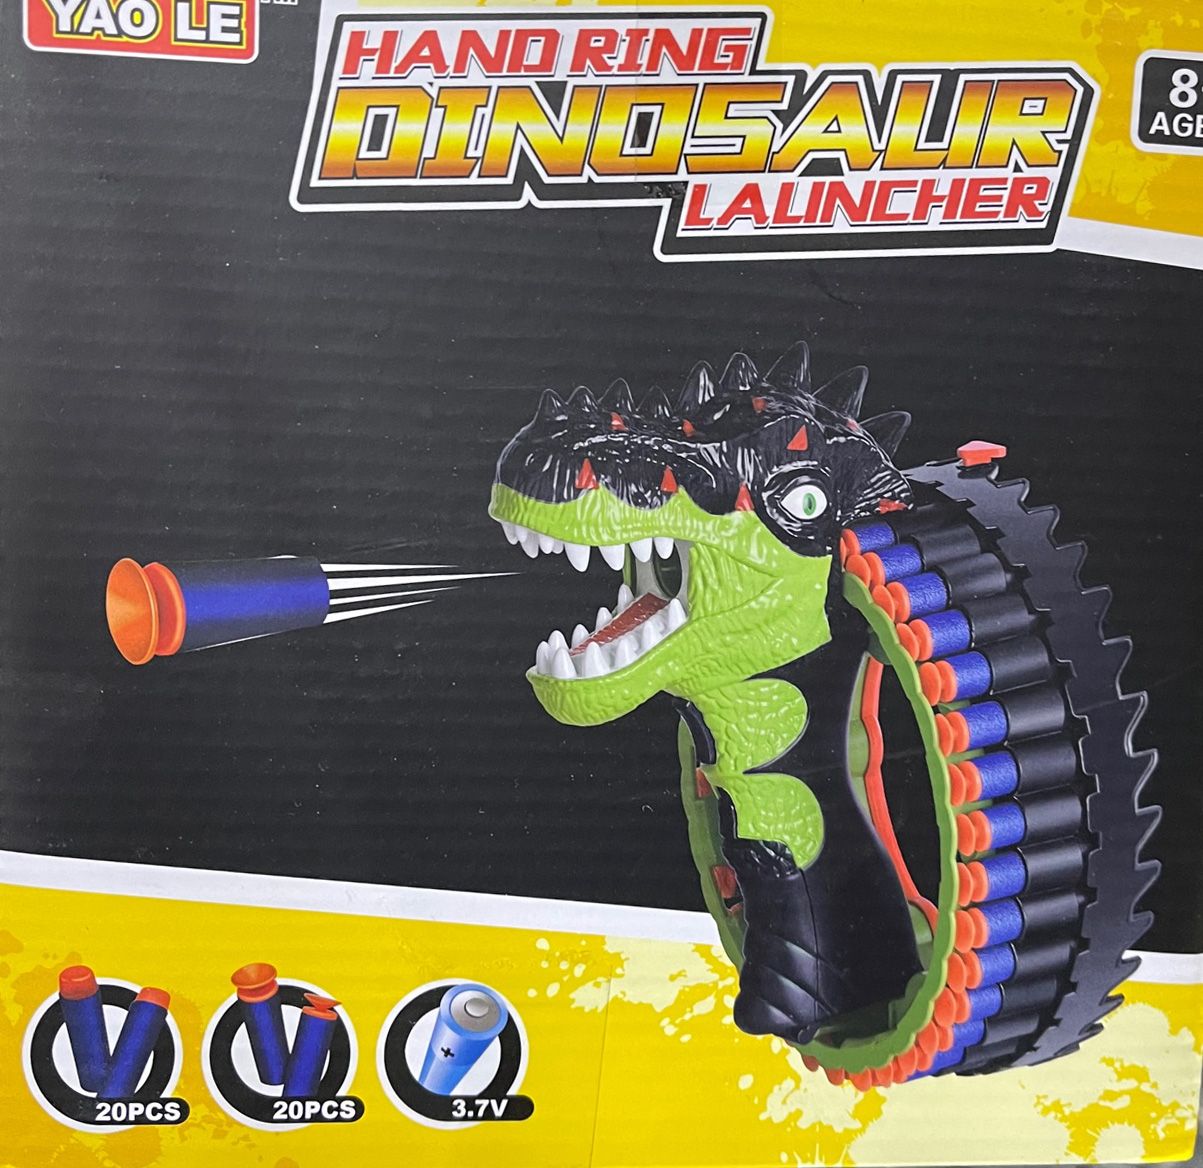 Műanyag Pisztoly Hand Ring Dinosaur Launcher - No.2028 - Gyerek játék